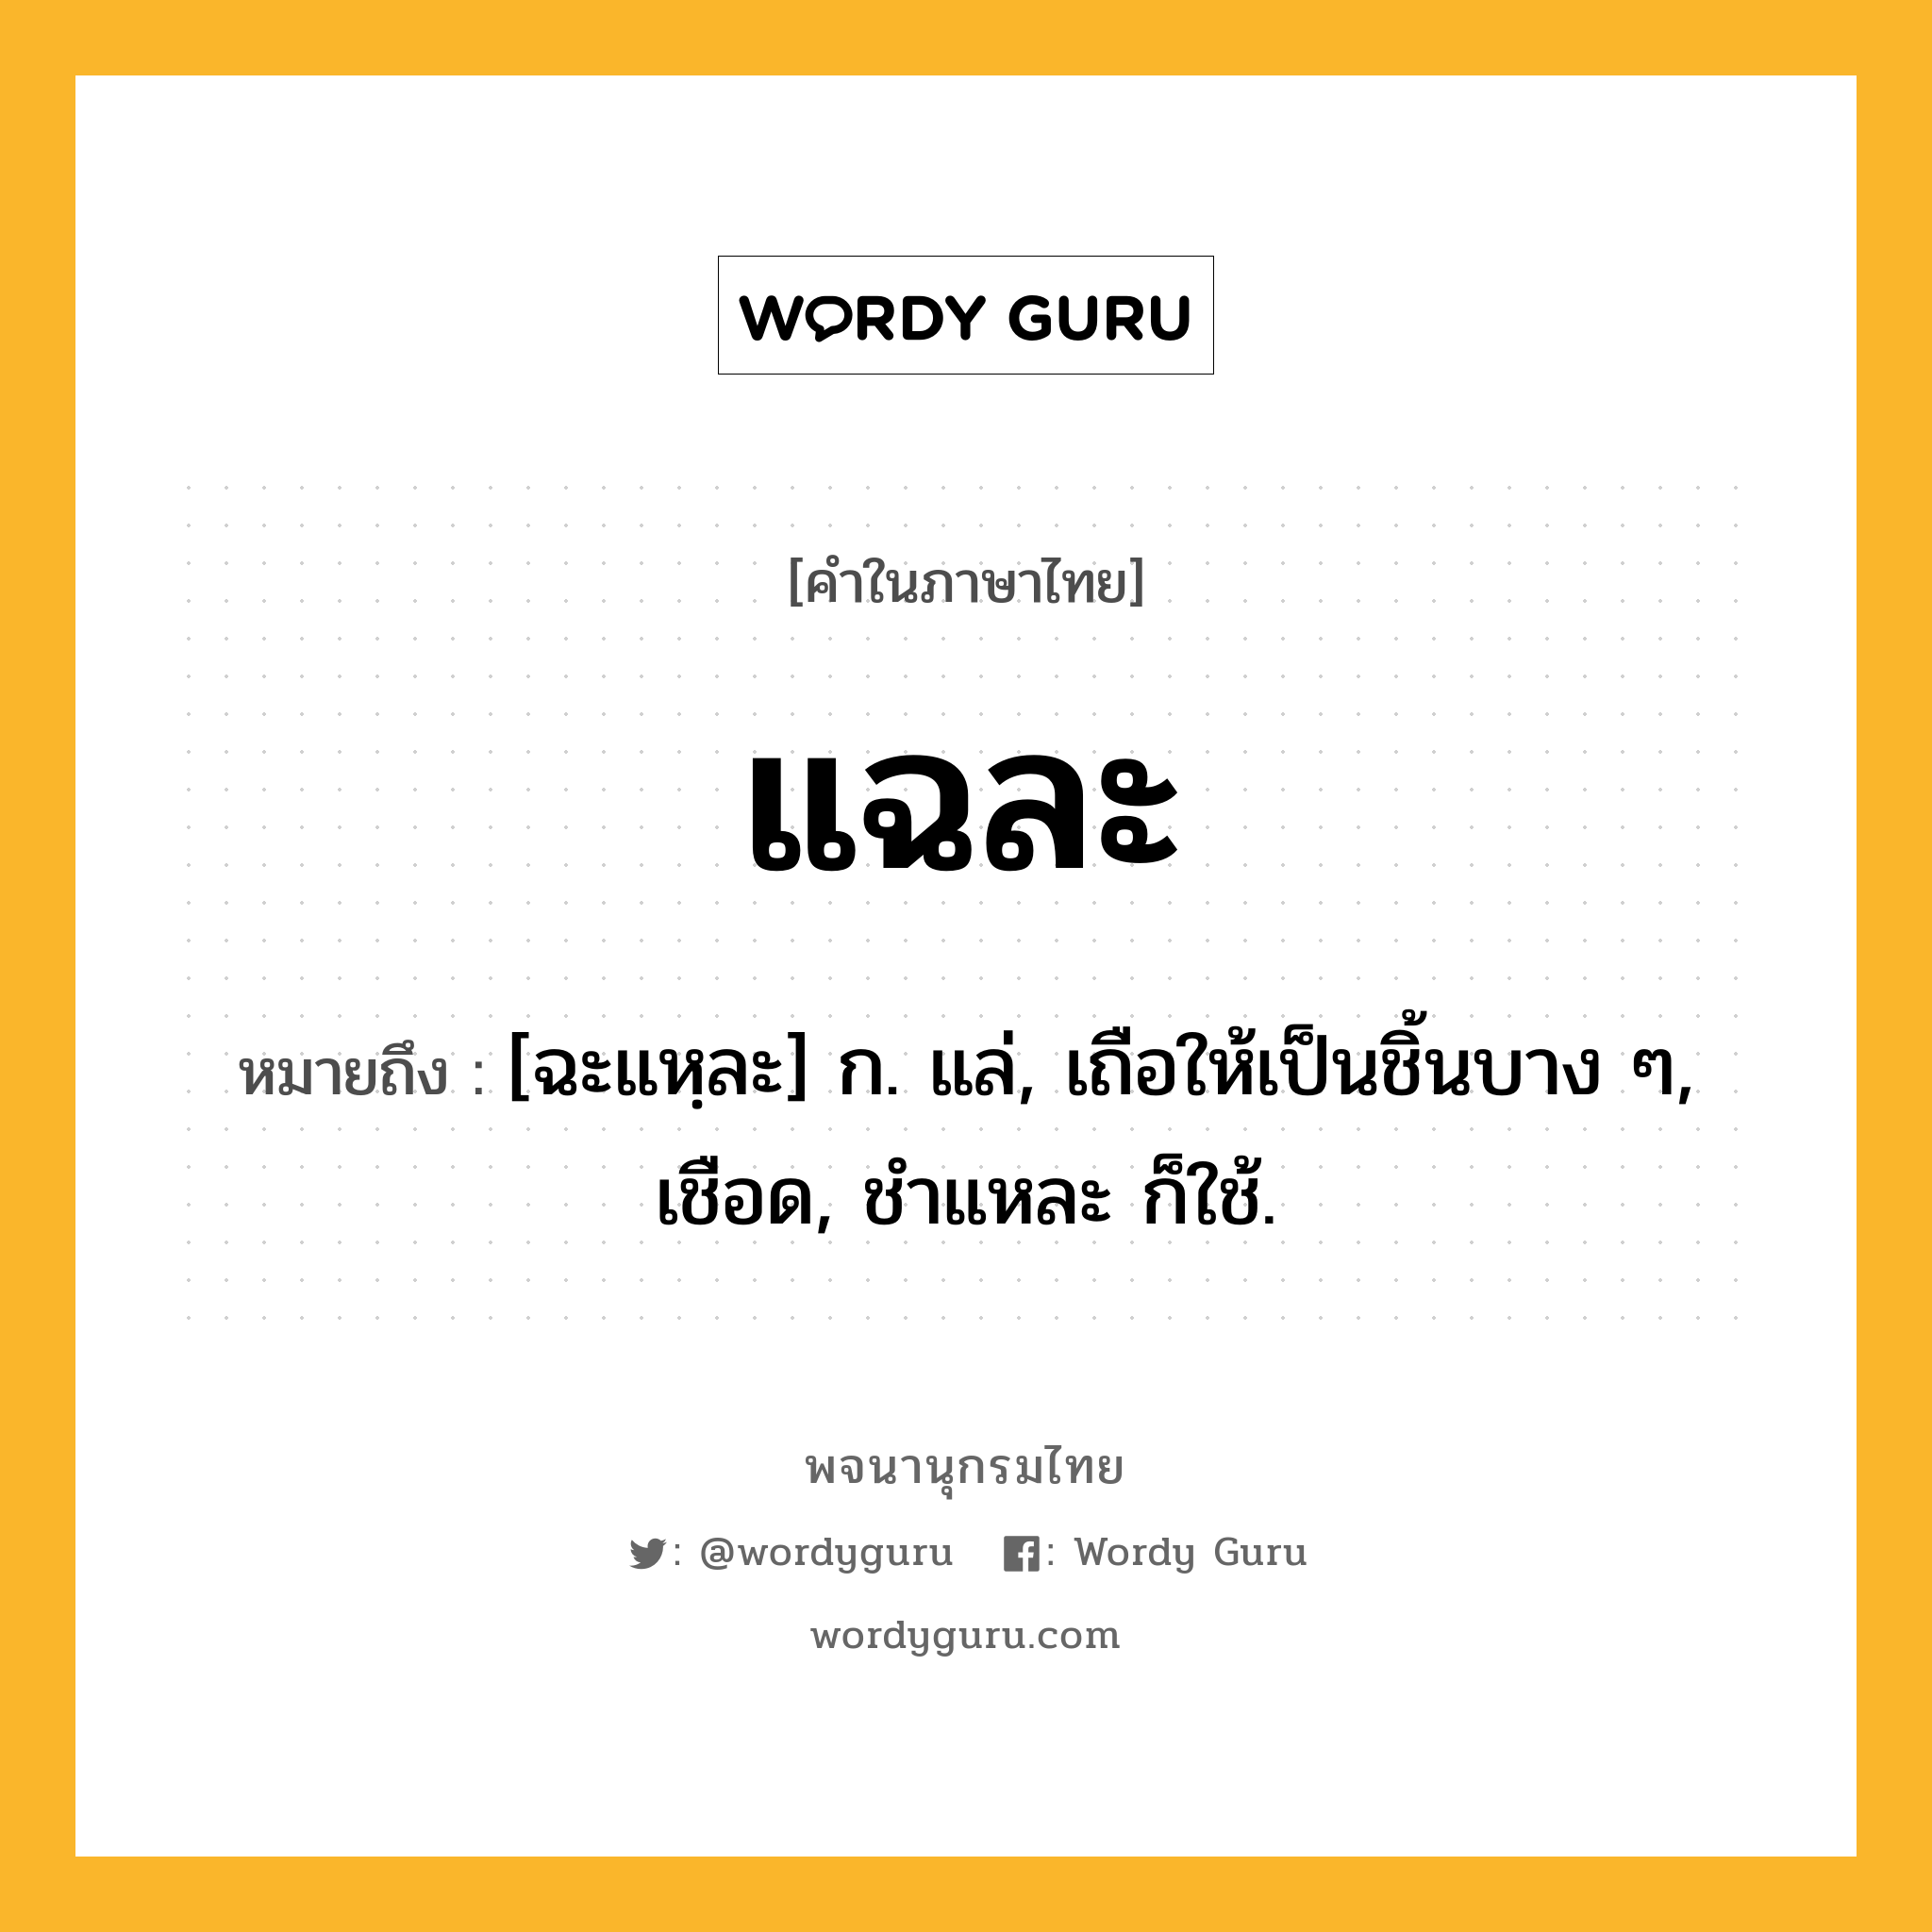 แฉละ ความหมาย หมายถึงอะไร?, คำในภาษาไทย แฉละ หมายถึง [ฉะแหฺละ] ก. แล่, เถือให้เป็นชิ้นบาง ๆ, เชือด, ชําแหละ ก็ใช้.